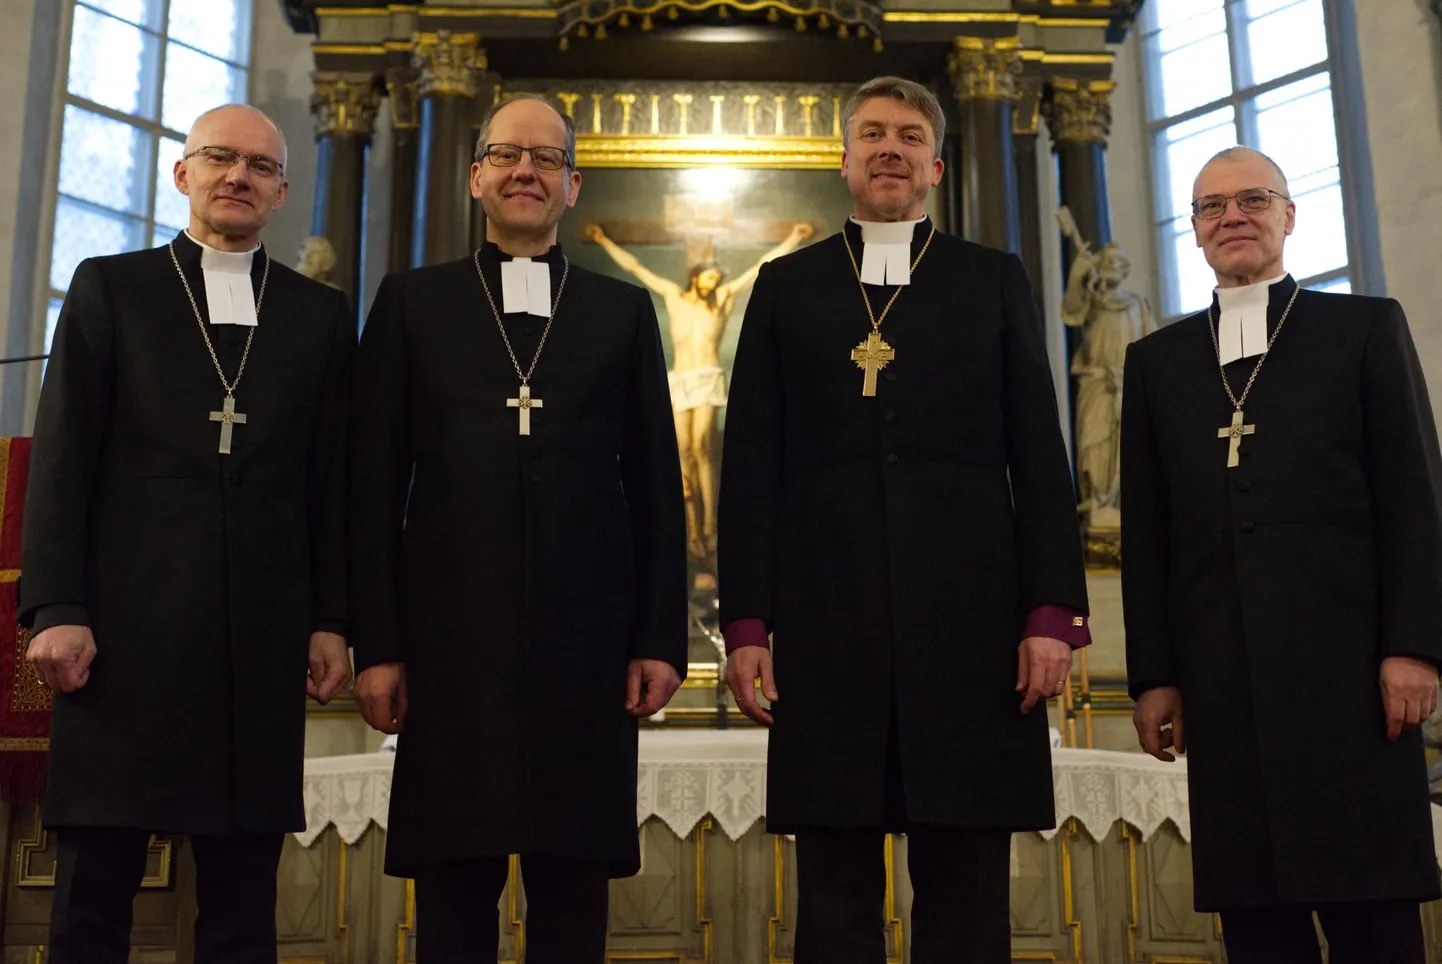 Peapiiskop Urmas Viilma (paremalt teine) pühitses ametisse korraga kolm piiskoppi. Vasakult Anti Toplaan, Ove Sander ja Marko Tiitus.